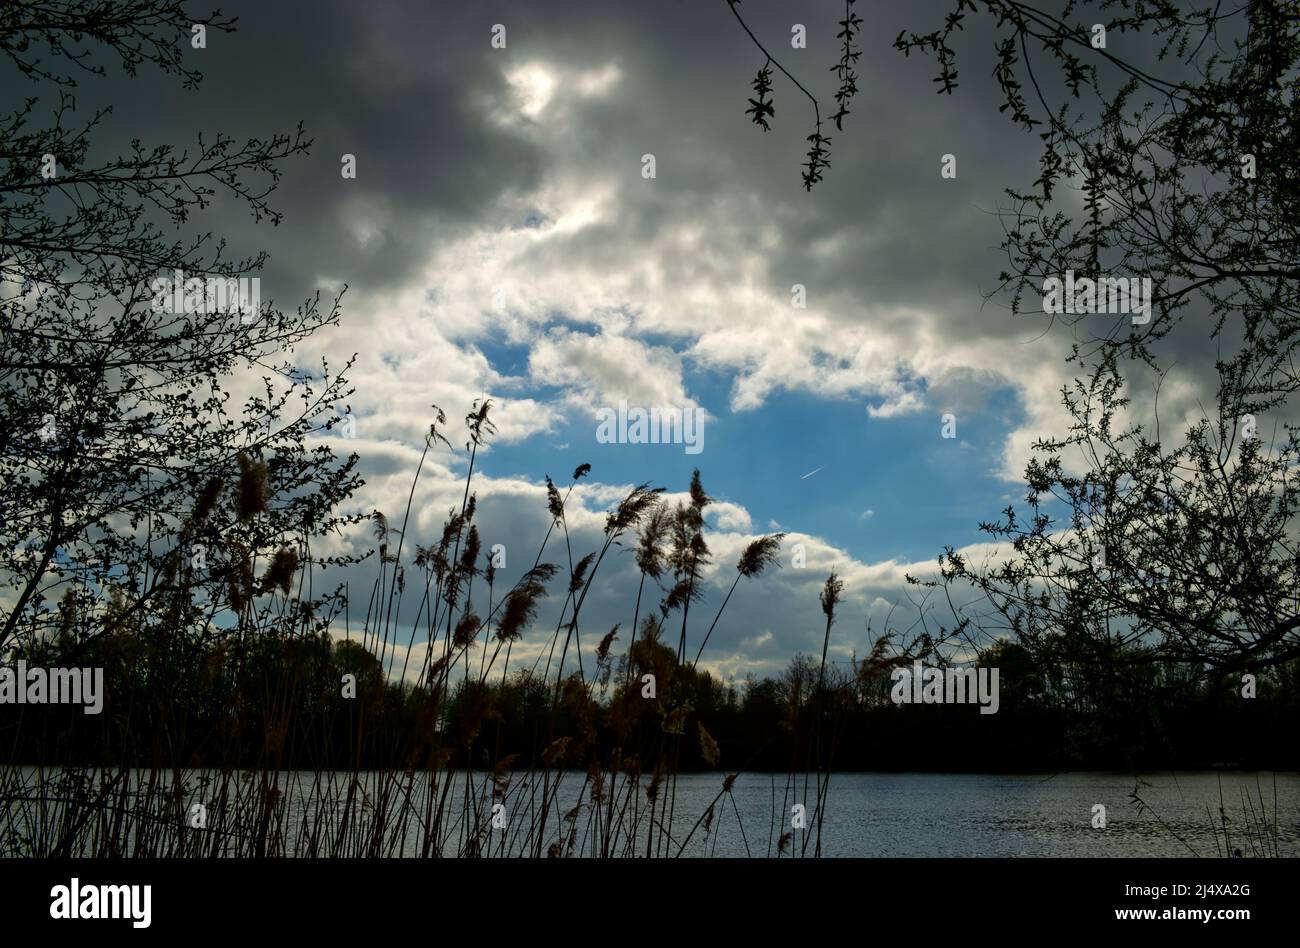 lago con canna e rami in un cielo grigio scuro nuvoloso con un luminoso punto blu chiaro al suo centro Foto Stock